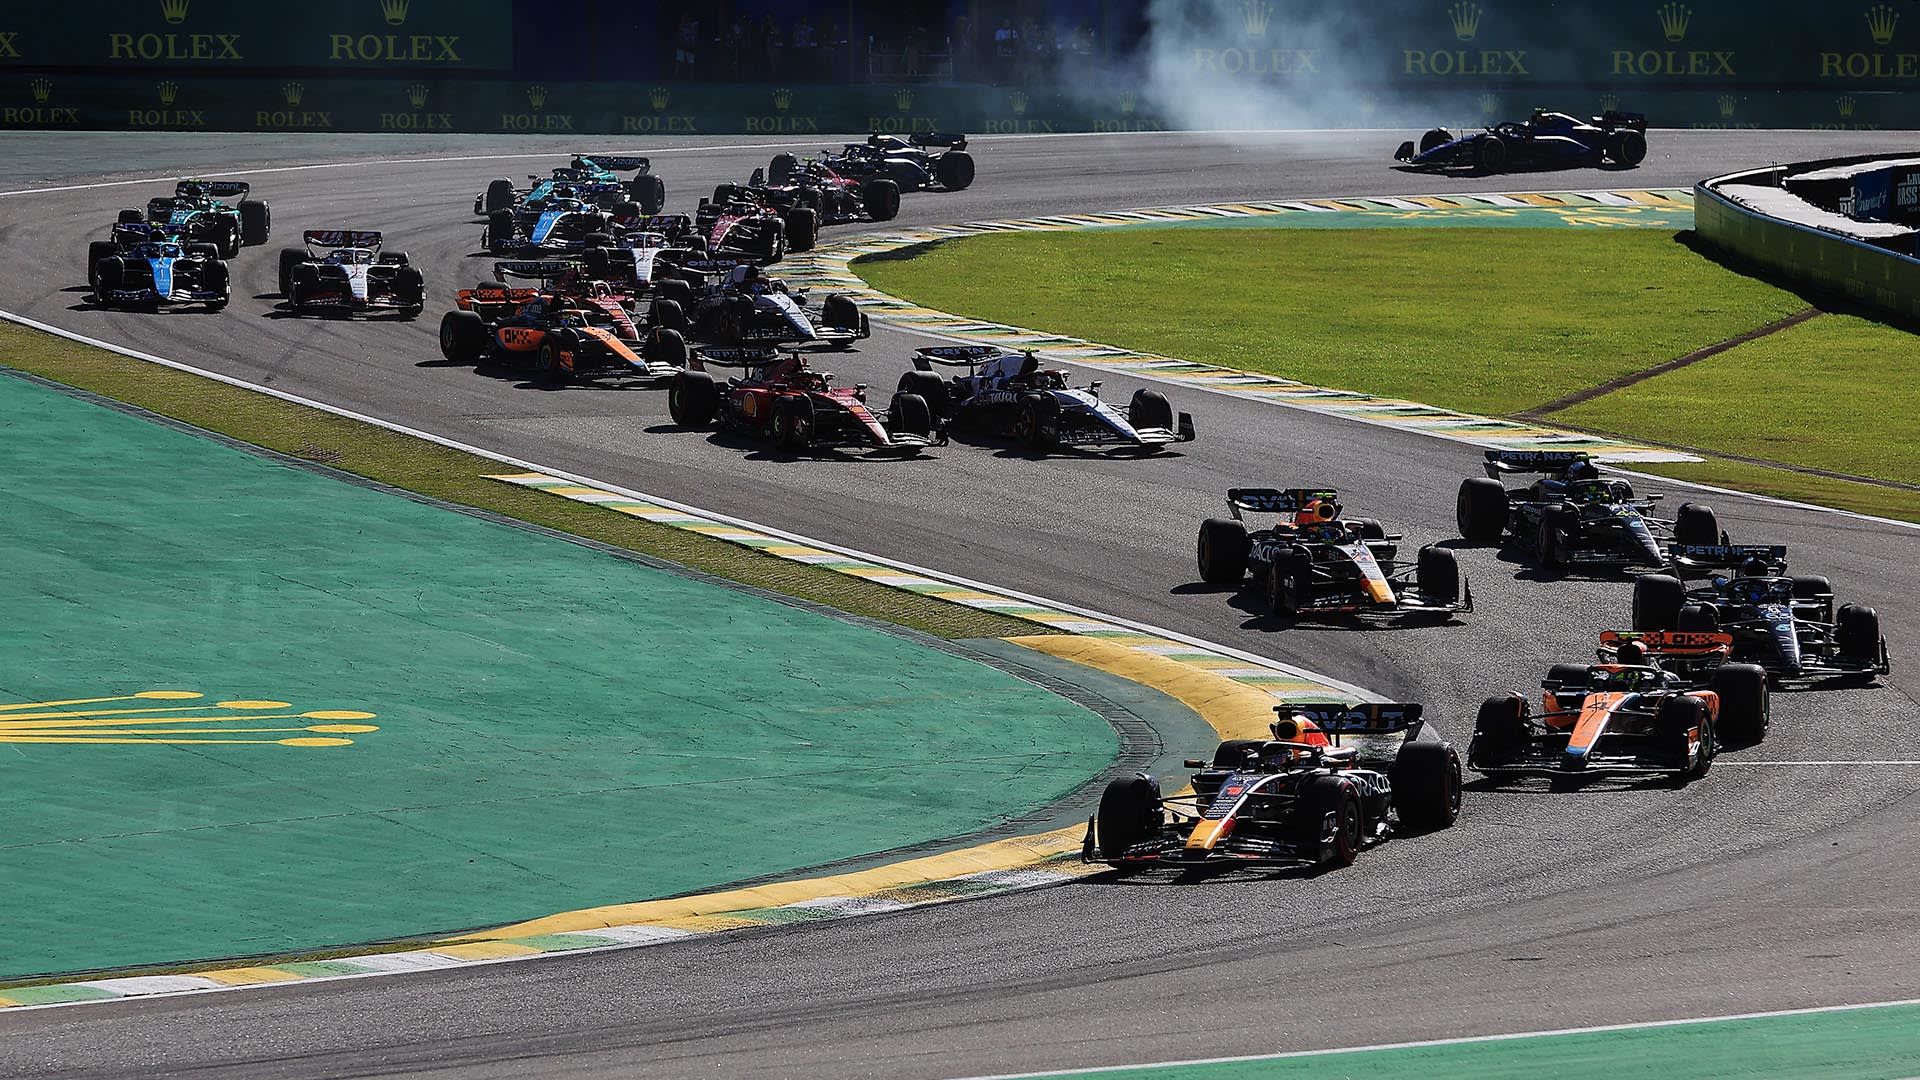 Sao Paulo Grand Prix 2022, Brazil